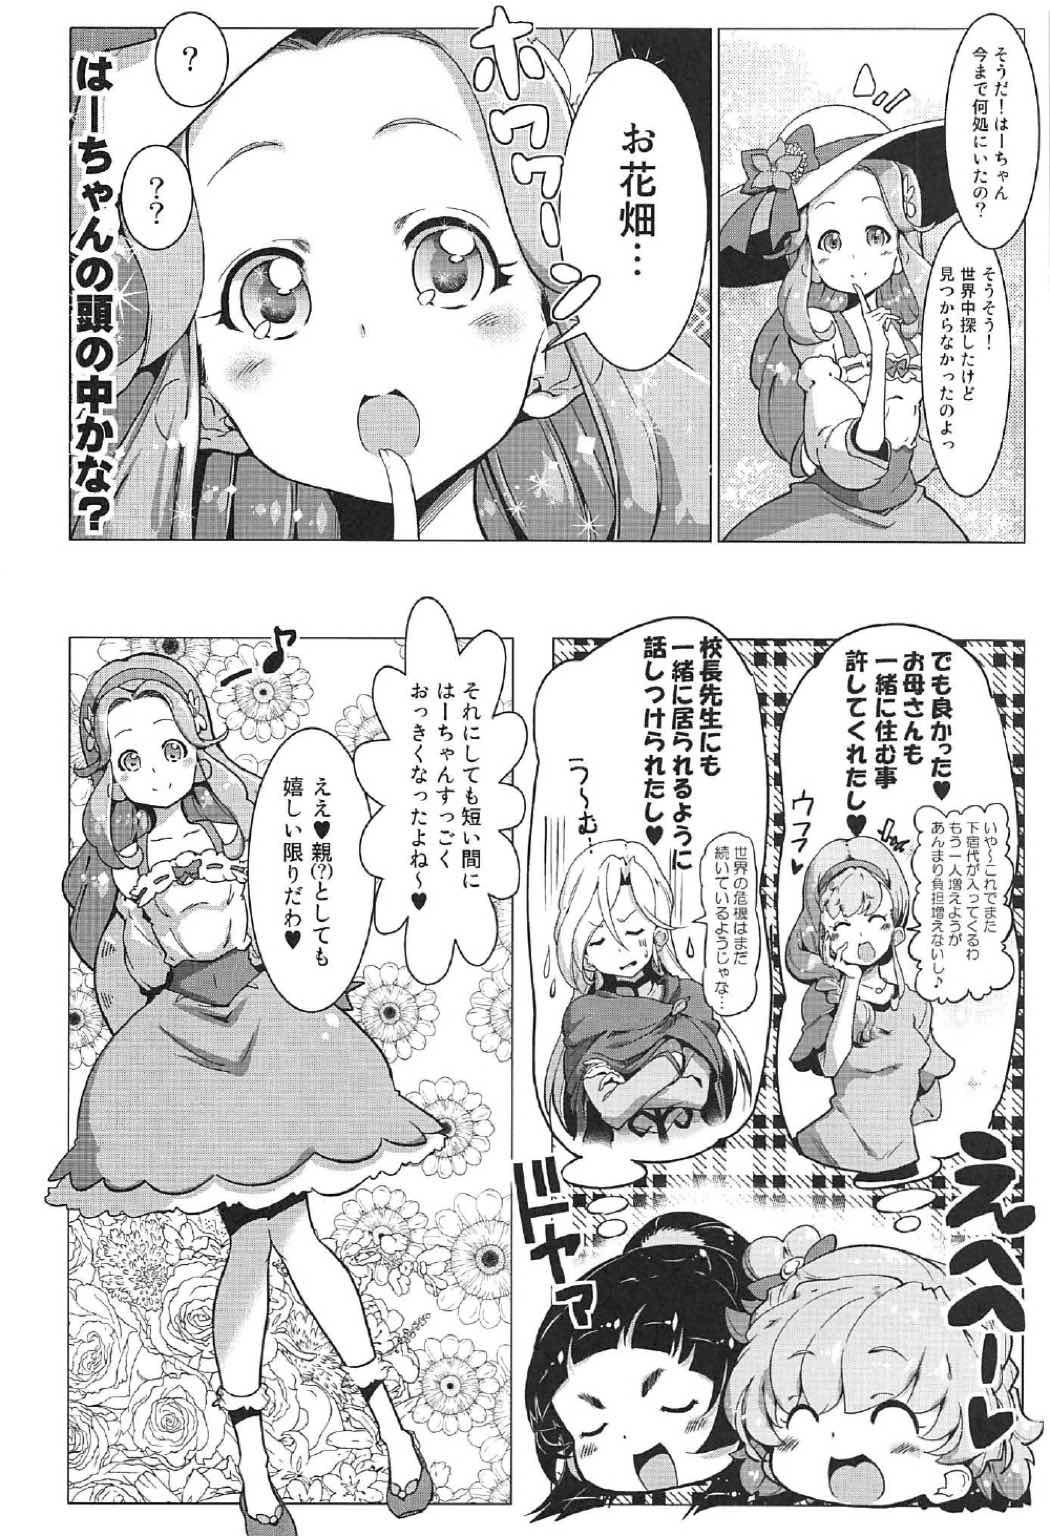 Female Yuri Mahou wa Himitsu no Kaori 4 - Maho girls precure Ejaculation - Page 5